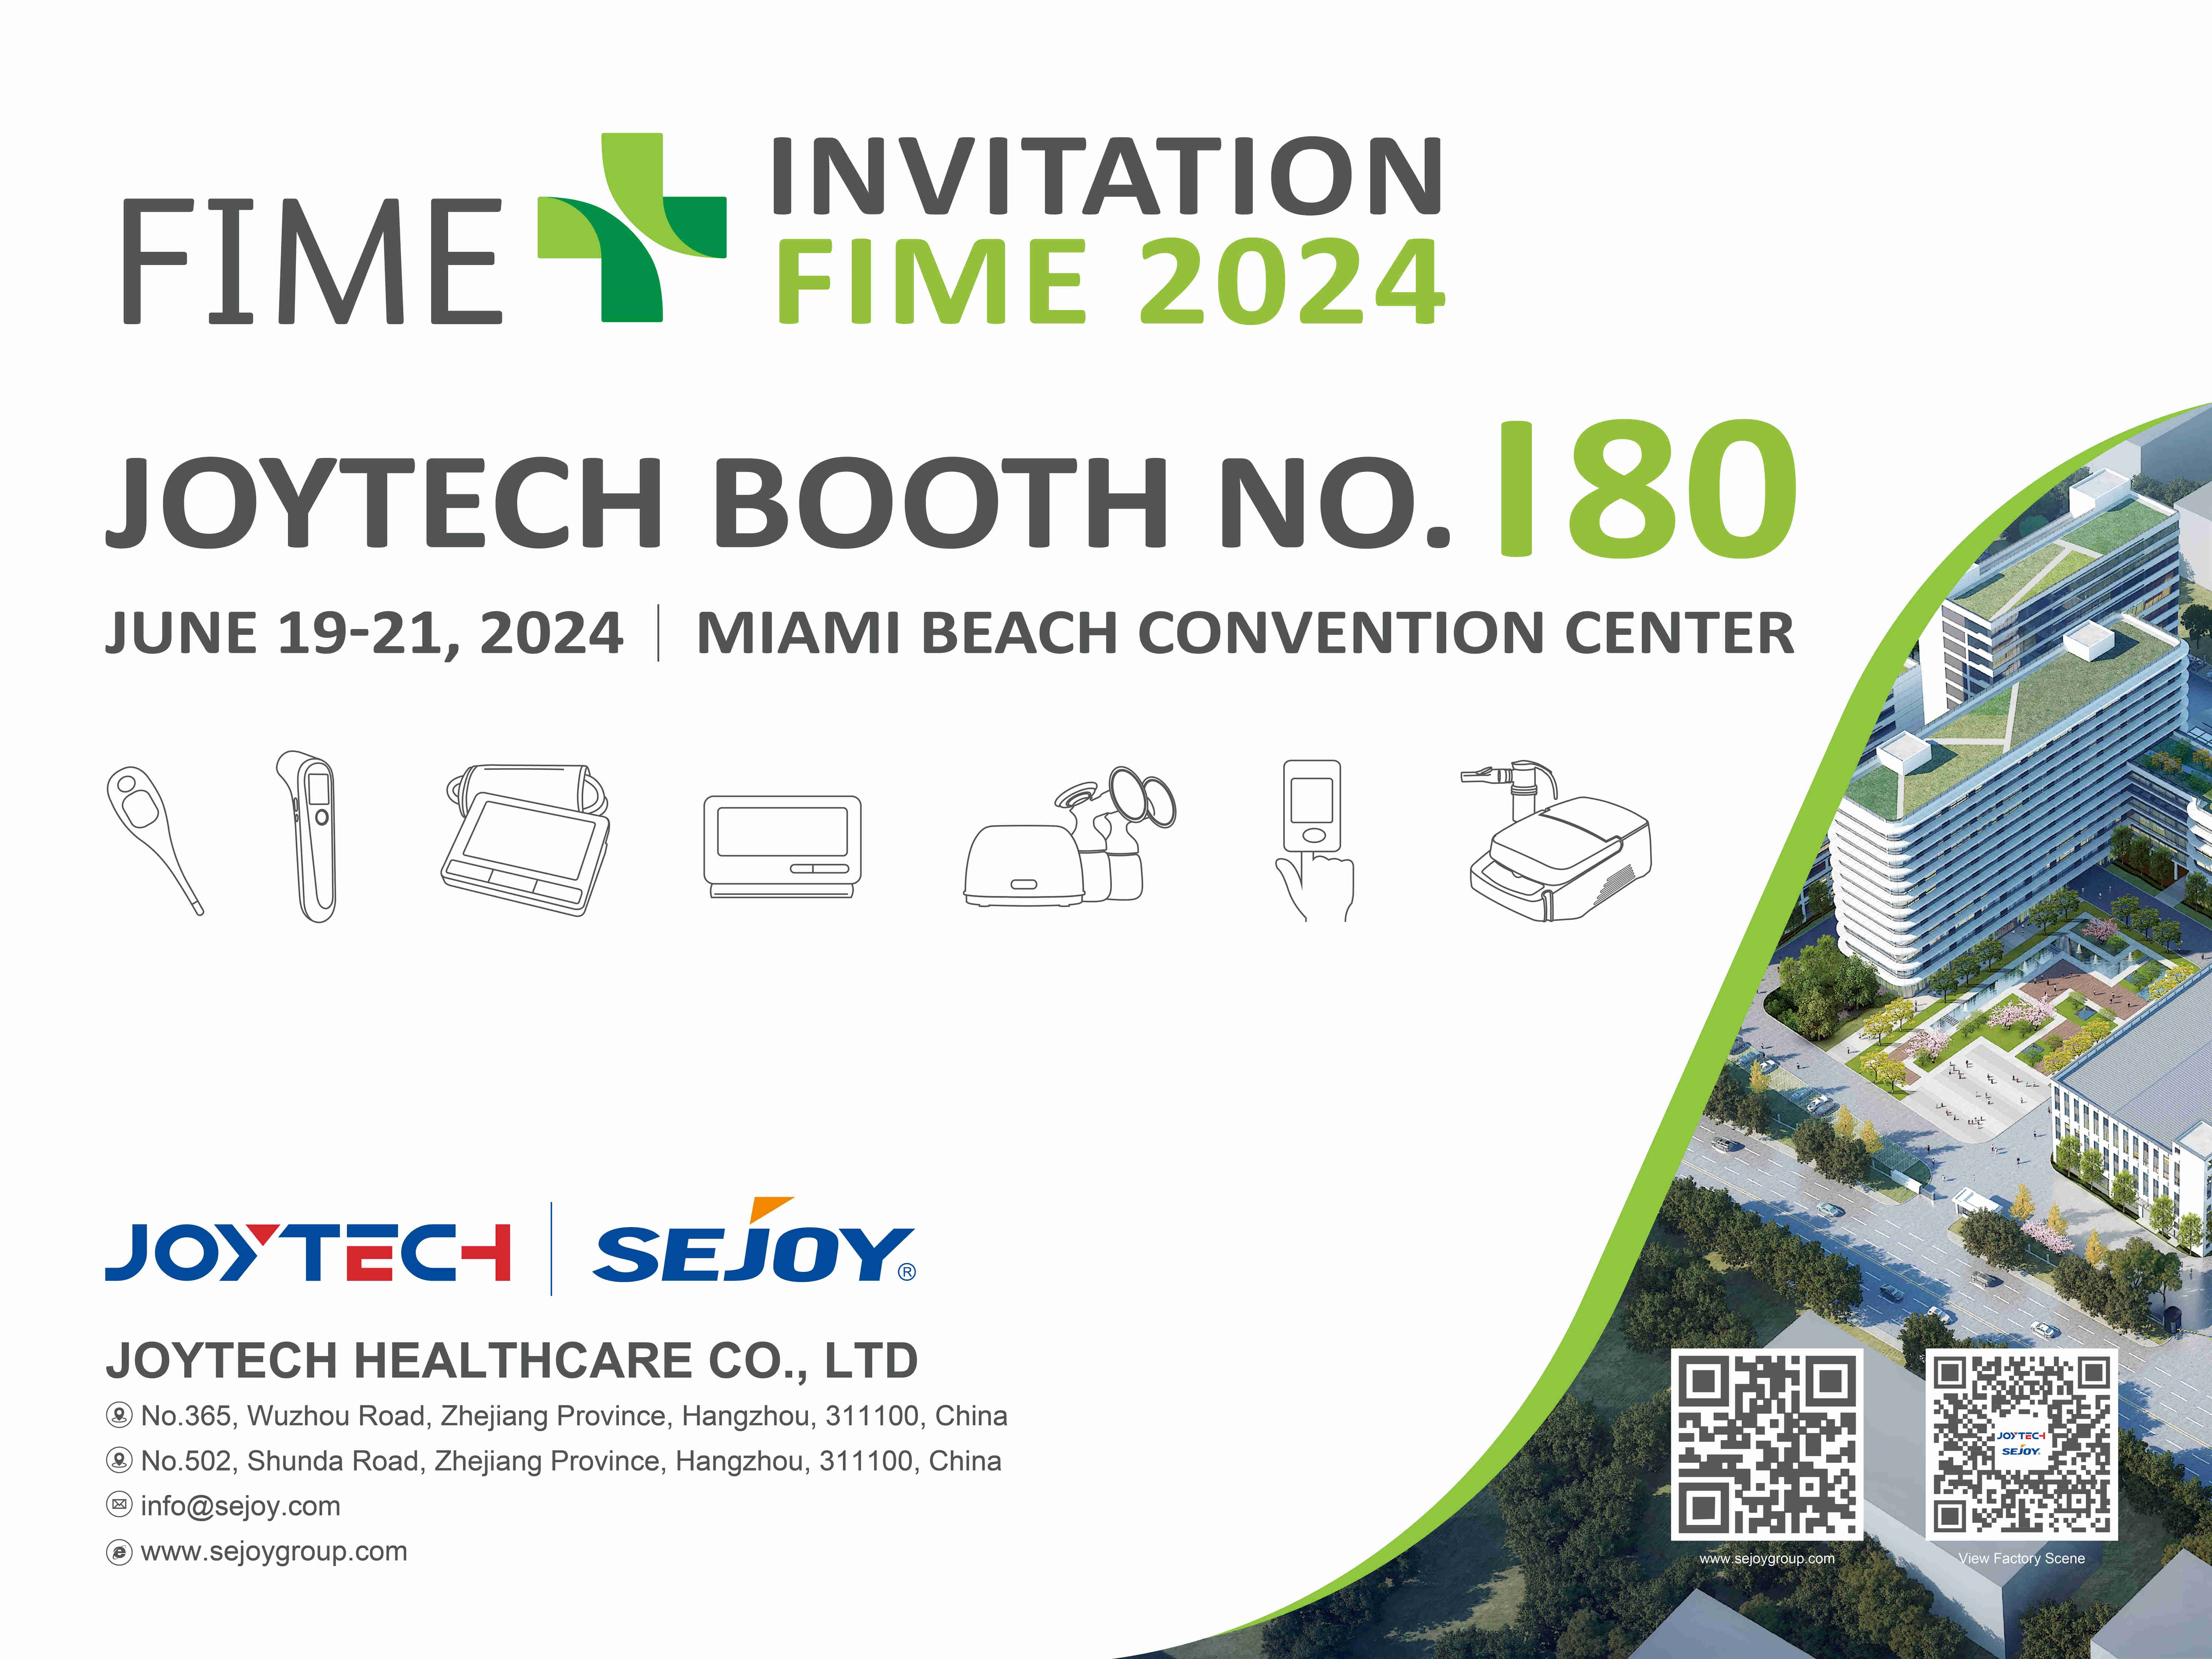 Joytech Healthcare از جدیدترین محصولات خود در نمایشگاه FIME 2024 در میامی رونمایی کرد.